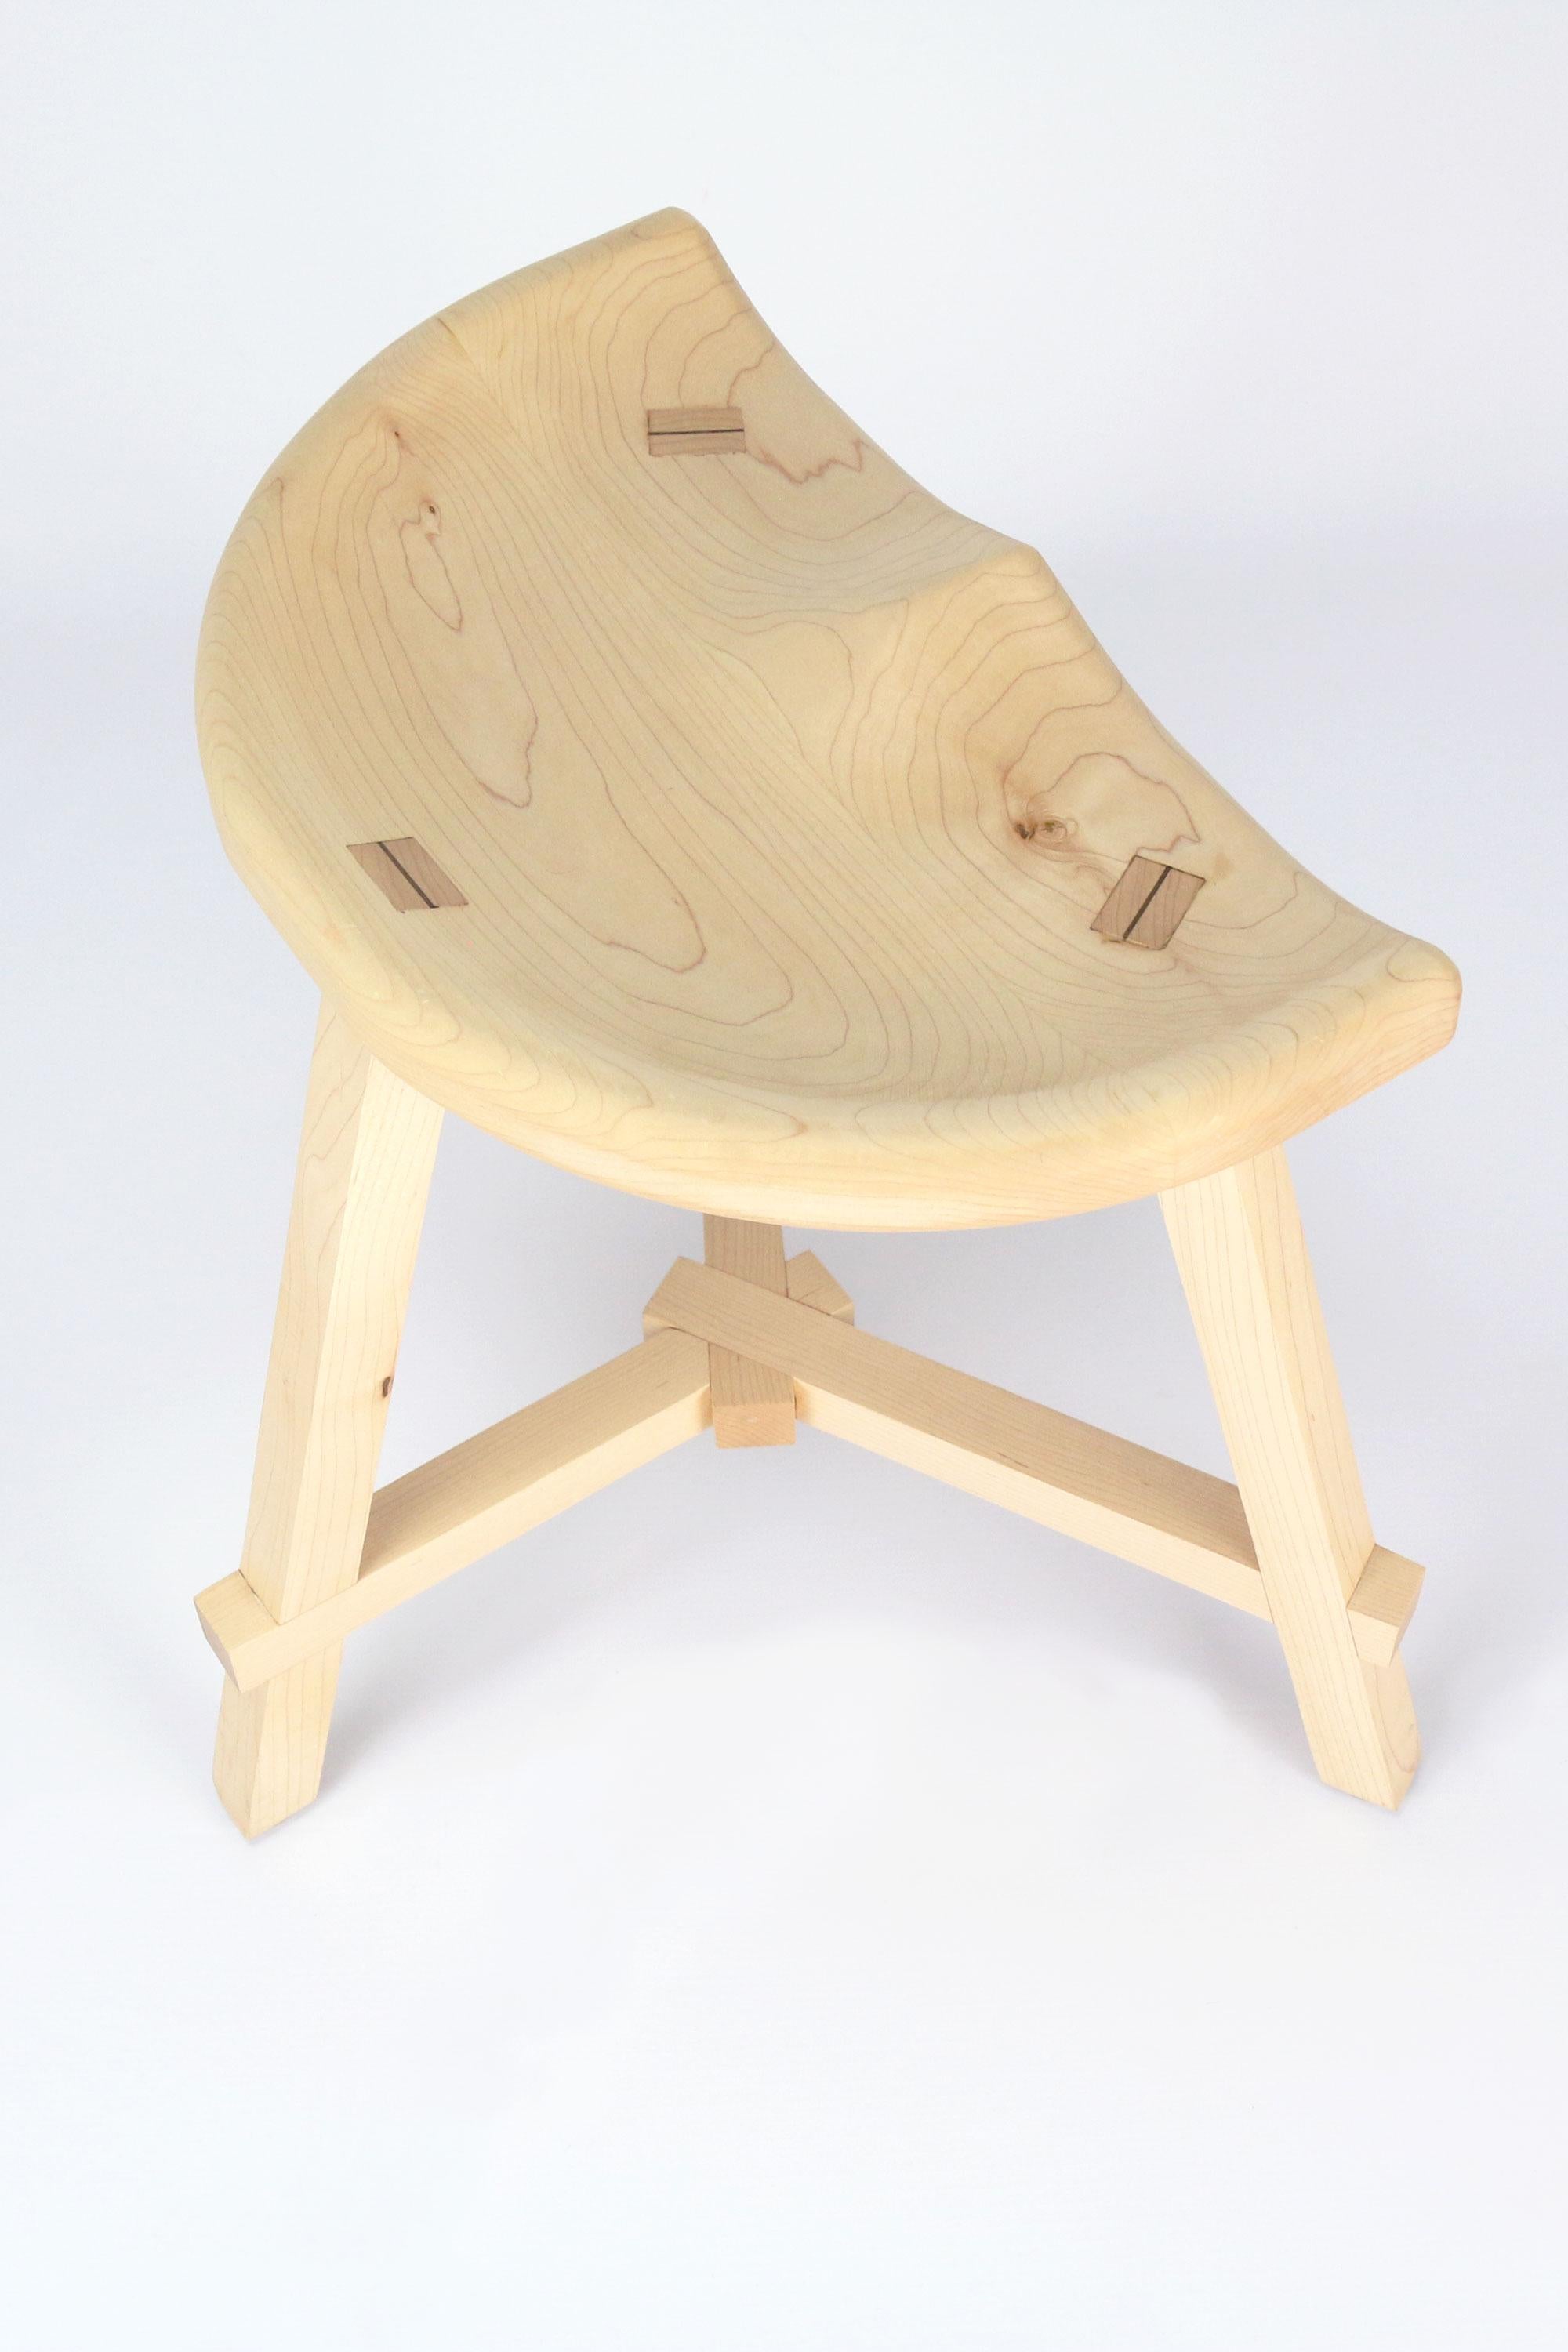 Der Eitelkeitshocker aus Holz wurde mit Blick auf Funktion und Eleganz entworfen und ist die perfekte Ergänzung für Ihren Waschtisch. 

Inspiriert von den klassischen Windsor-Stühlen, zeichnen sich diese niedrigen Holzhocker durch ihr traditionelles